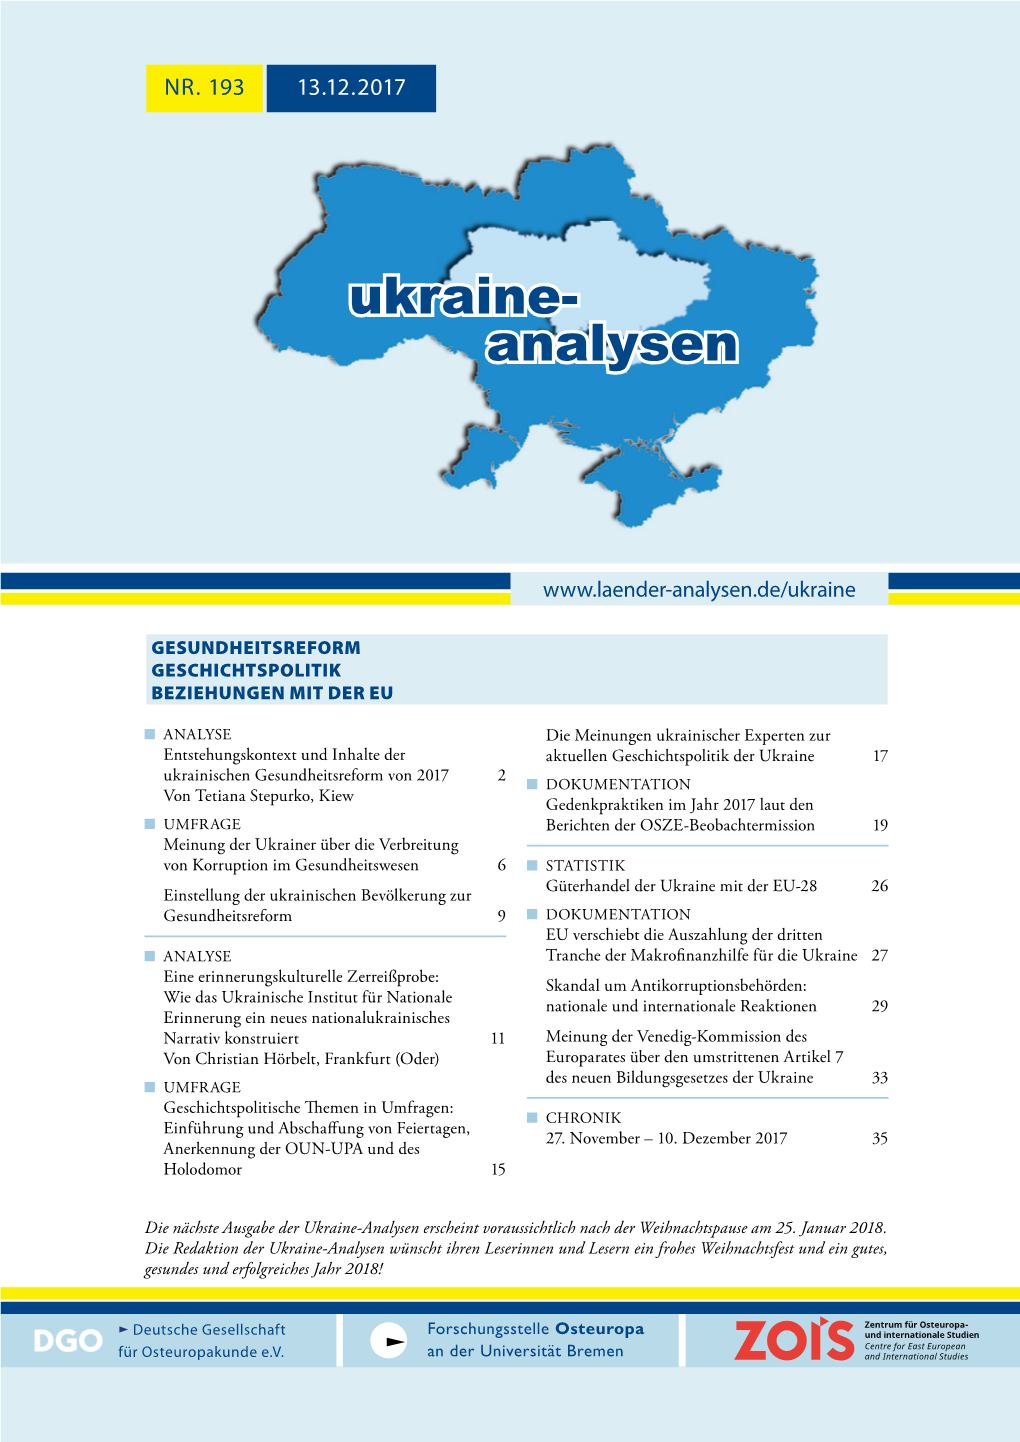 Ukraine-Analysen Erscheint Voraussichtlich Nach Der Weihnachtspause Am 25